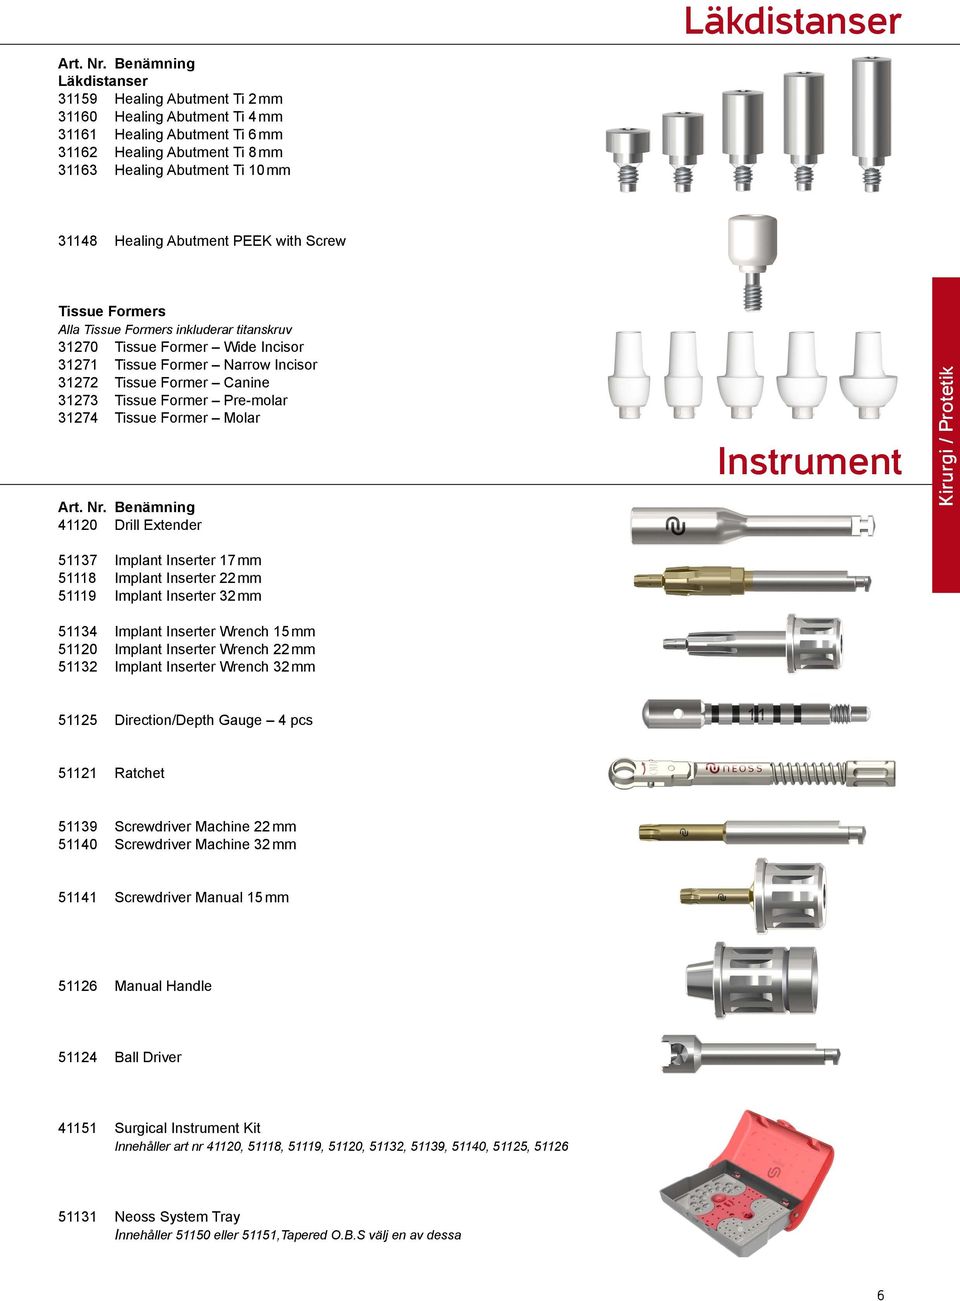 Pre-molar 31274 Tissue Former Molar 41120 Drill Extender Instrument Kirurgi / Protetik 51137 Implant Inserter 17 mm 51118 Implant Inserter 22 mm 51119 Implant Inserter 32 mm 51134 Implant Inserter